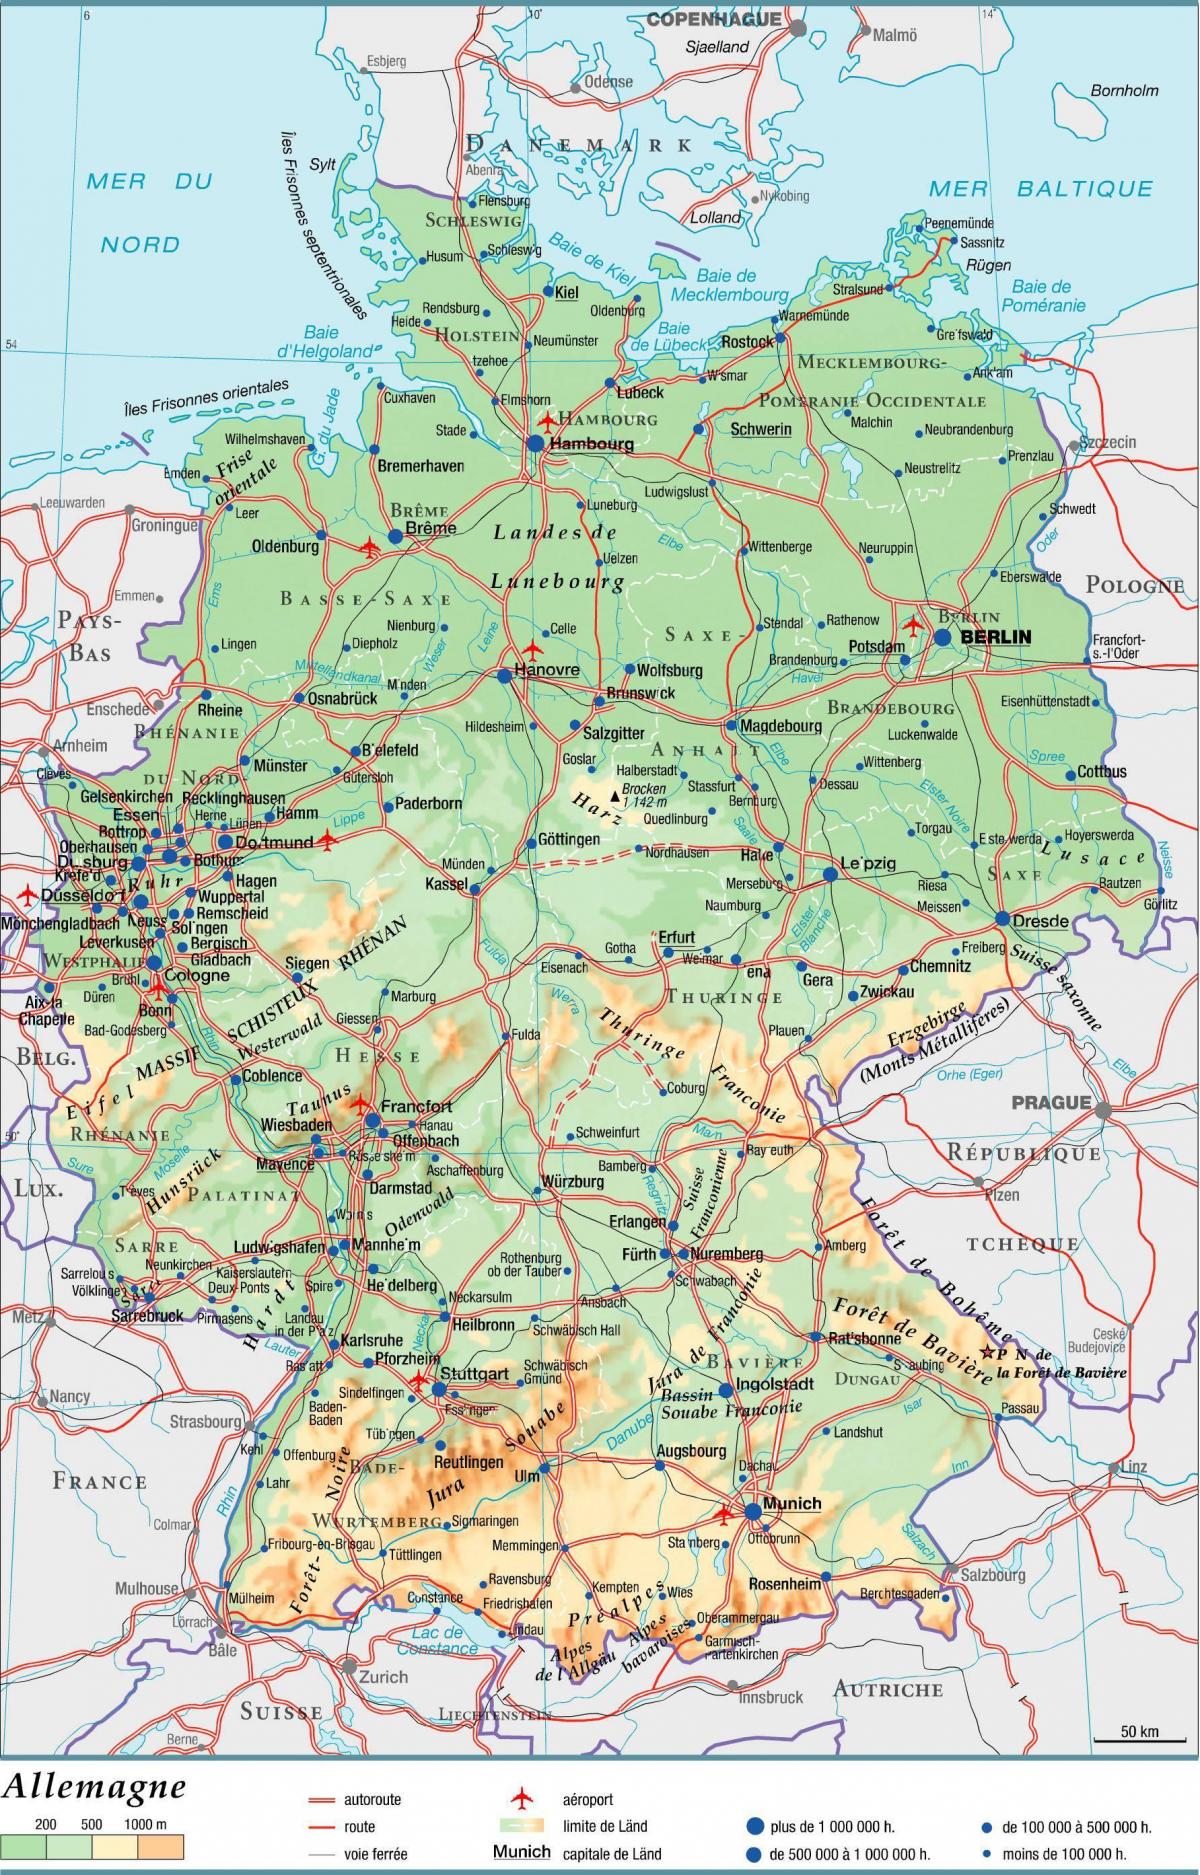 Mappa grande della Germania